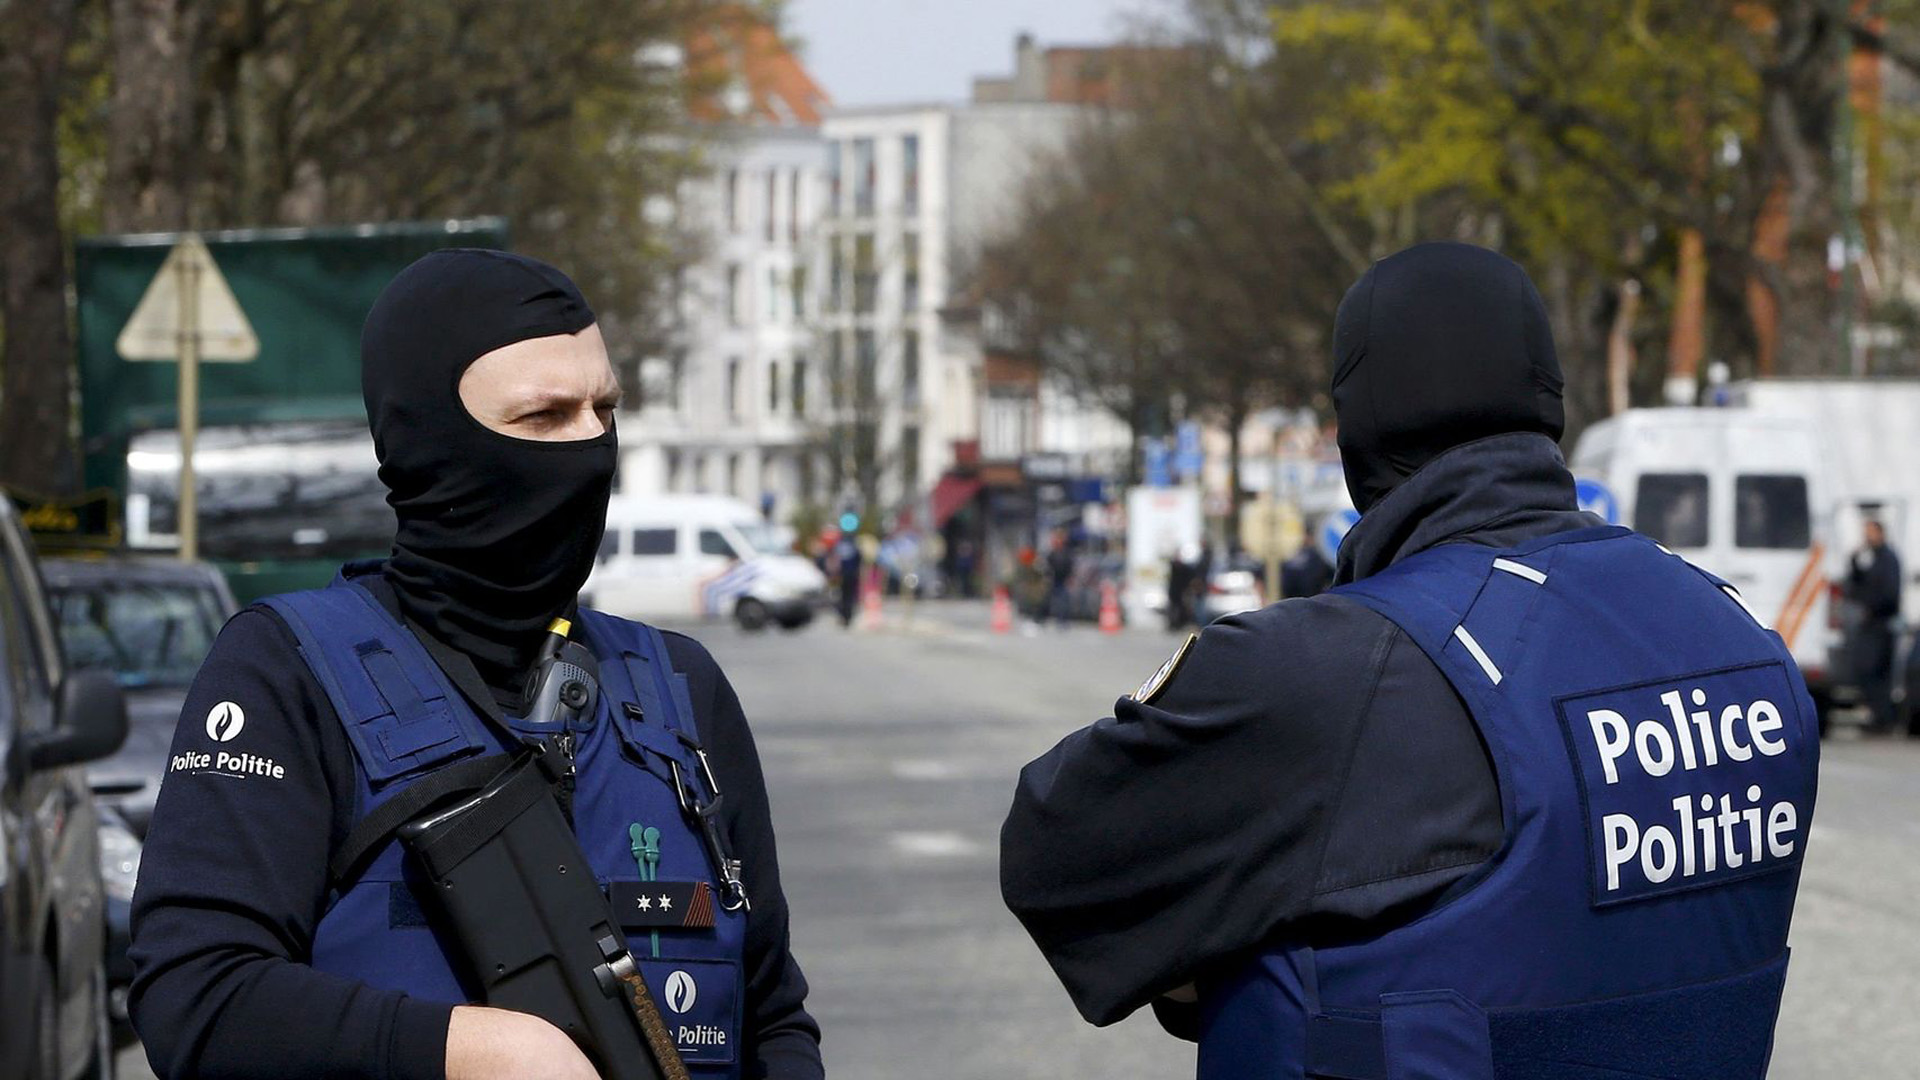 Un sujeto ataco a las oficiales con un machete cerca de la comisaria central de esa localidad a 50 kilómetros de Bruselas